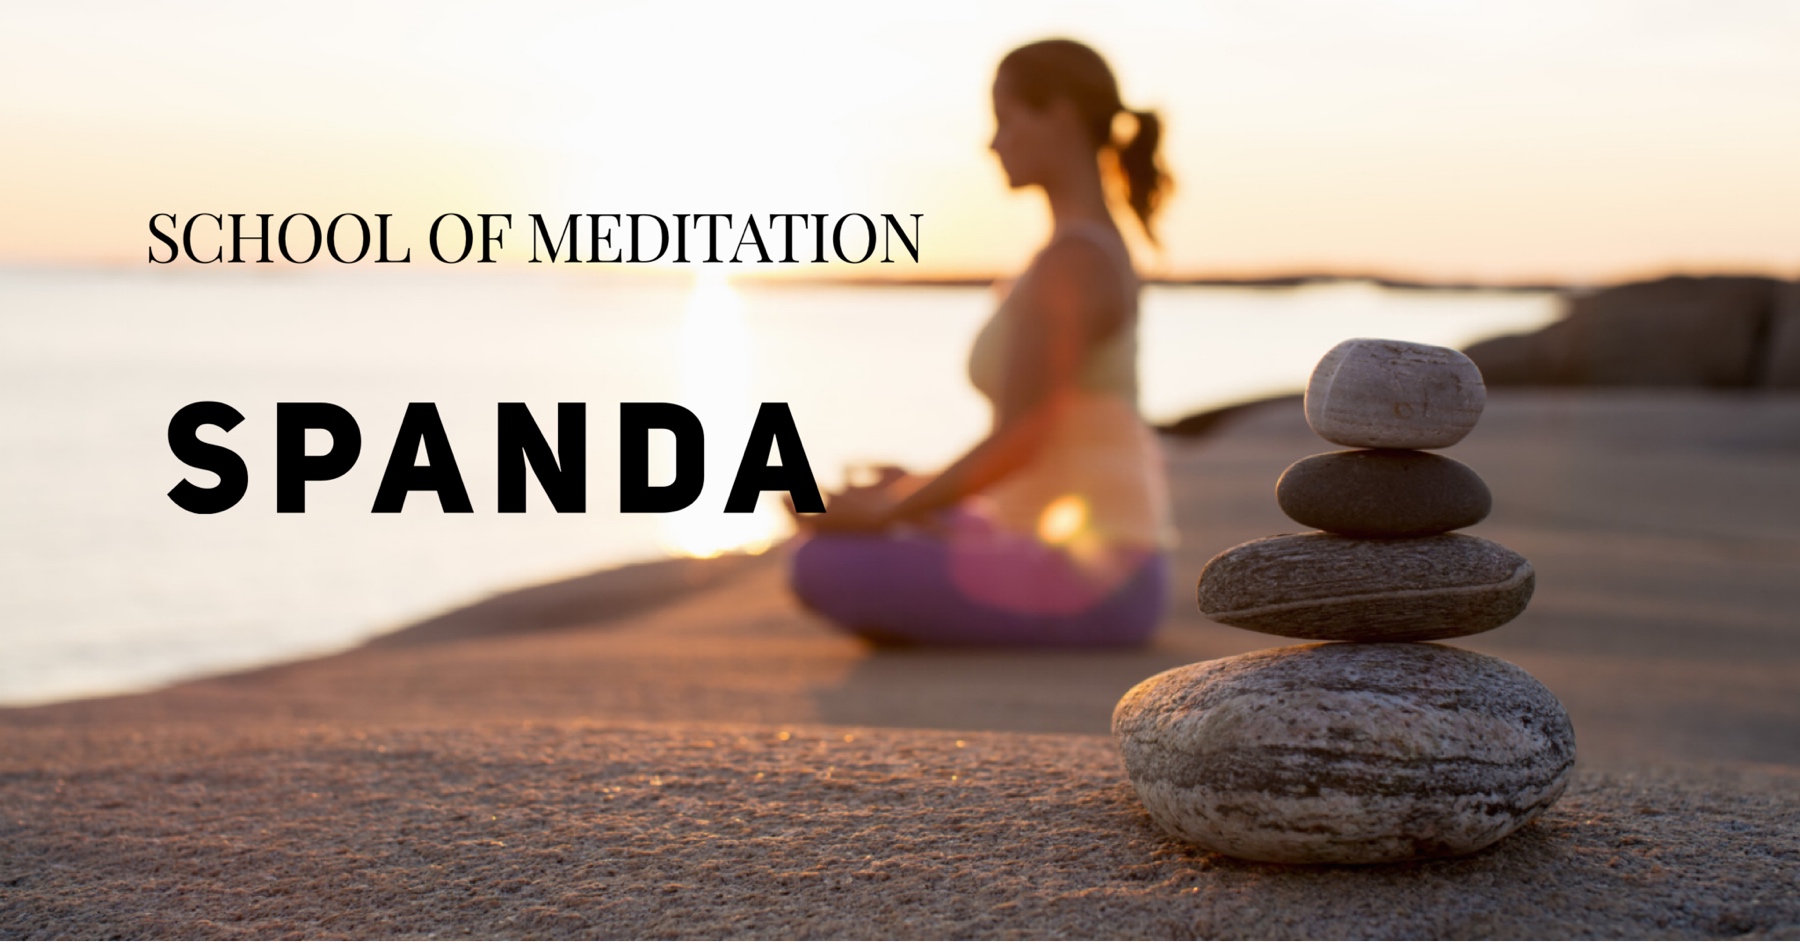 На наших курсах Вы:

1. Узнаете о восьмиступенчатой Йоге Патанджали, основных инструментах для успешной медитации.

2. Получите полные рекомендации по  асанам (йога-позициям) для медитации, а также по позициям, которые позволят войти в позиции для медитации.